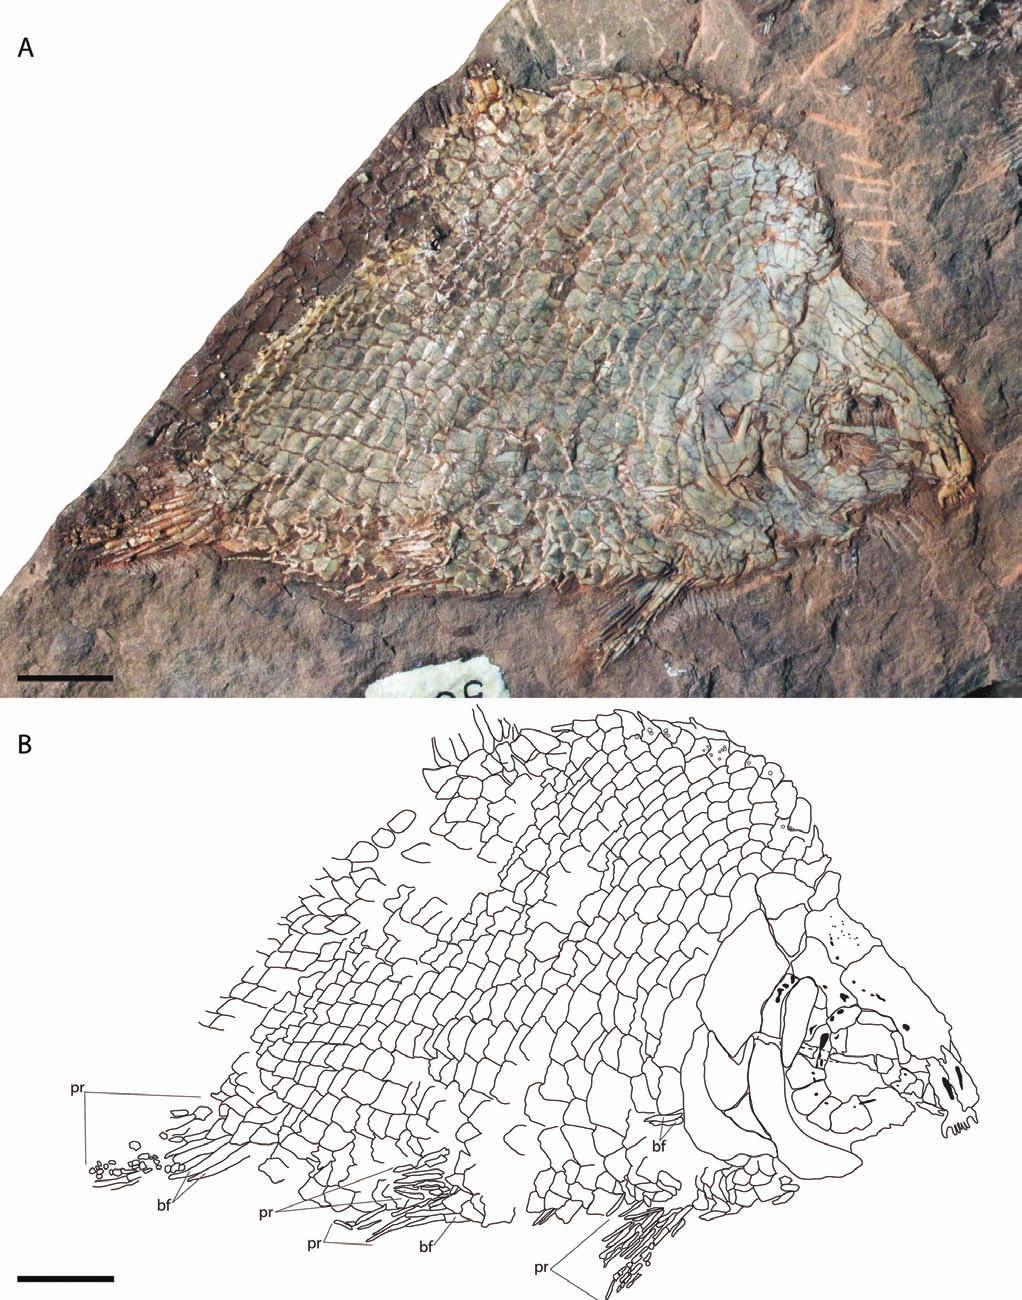 GIBSON TRIASSIC SEMIONOTID FISH FROM UTAH 1043 FIGURE 4. Lophionotus sanjuanensis, gen. et sp. nov., specimen AMNH 5679A.